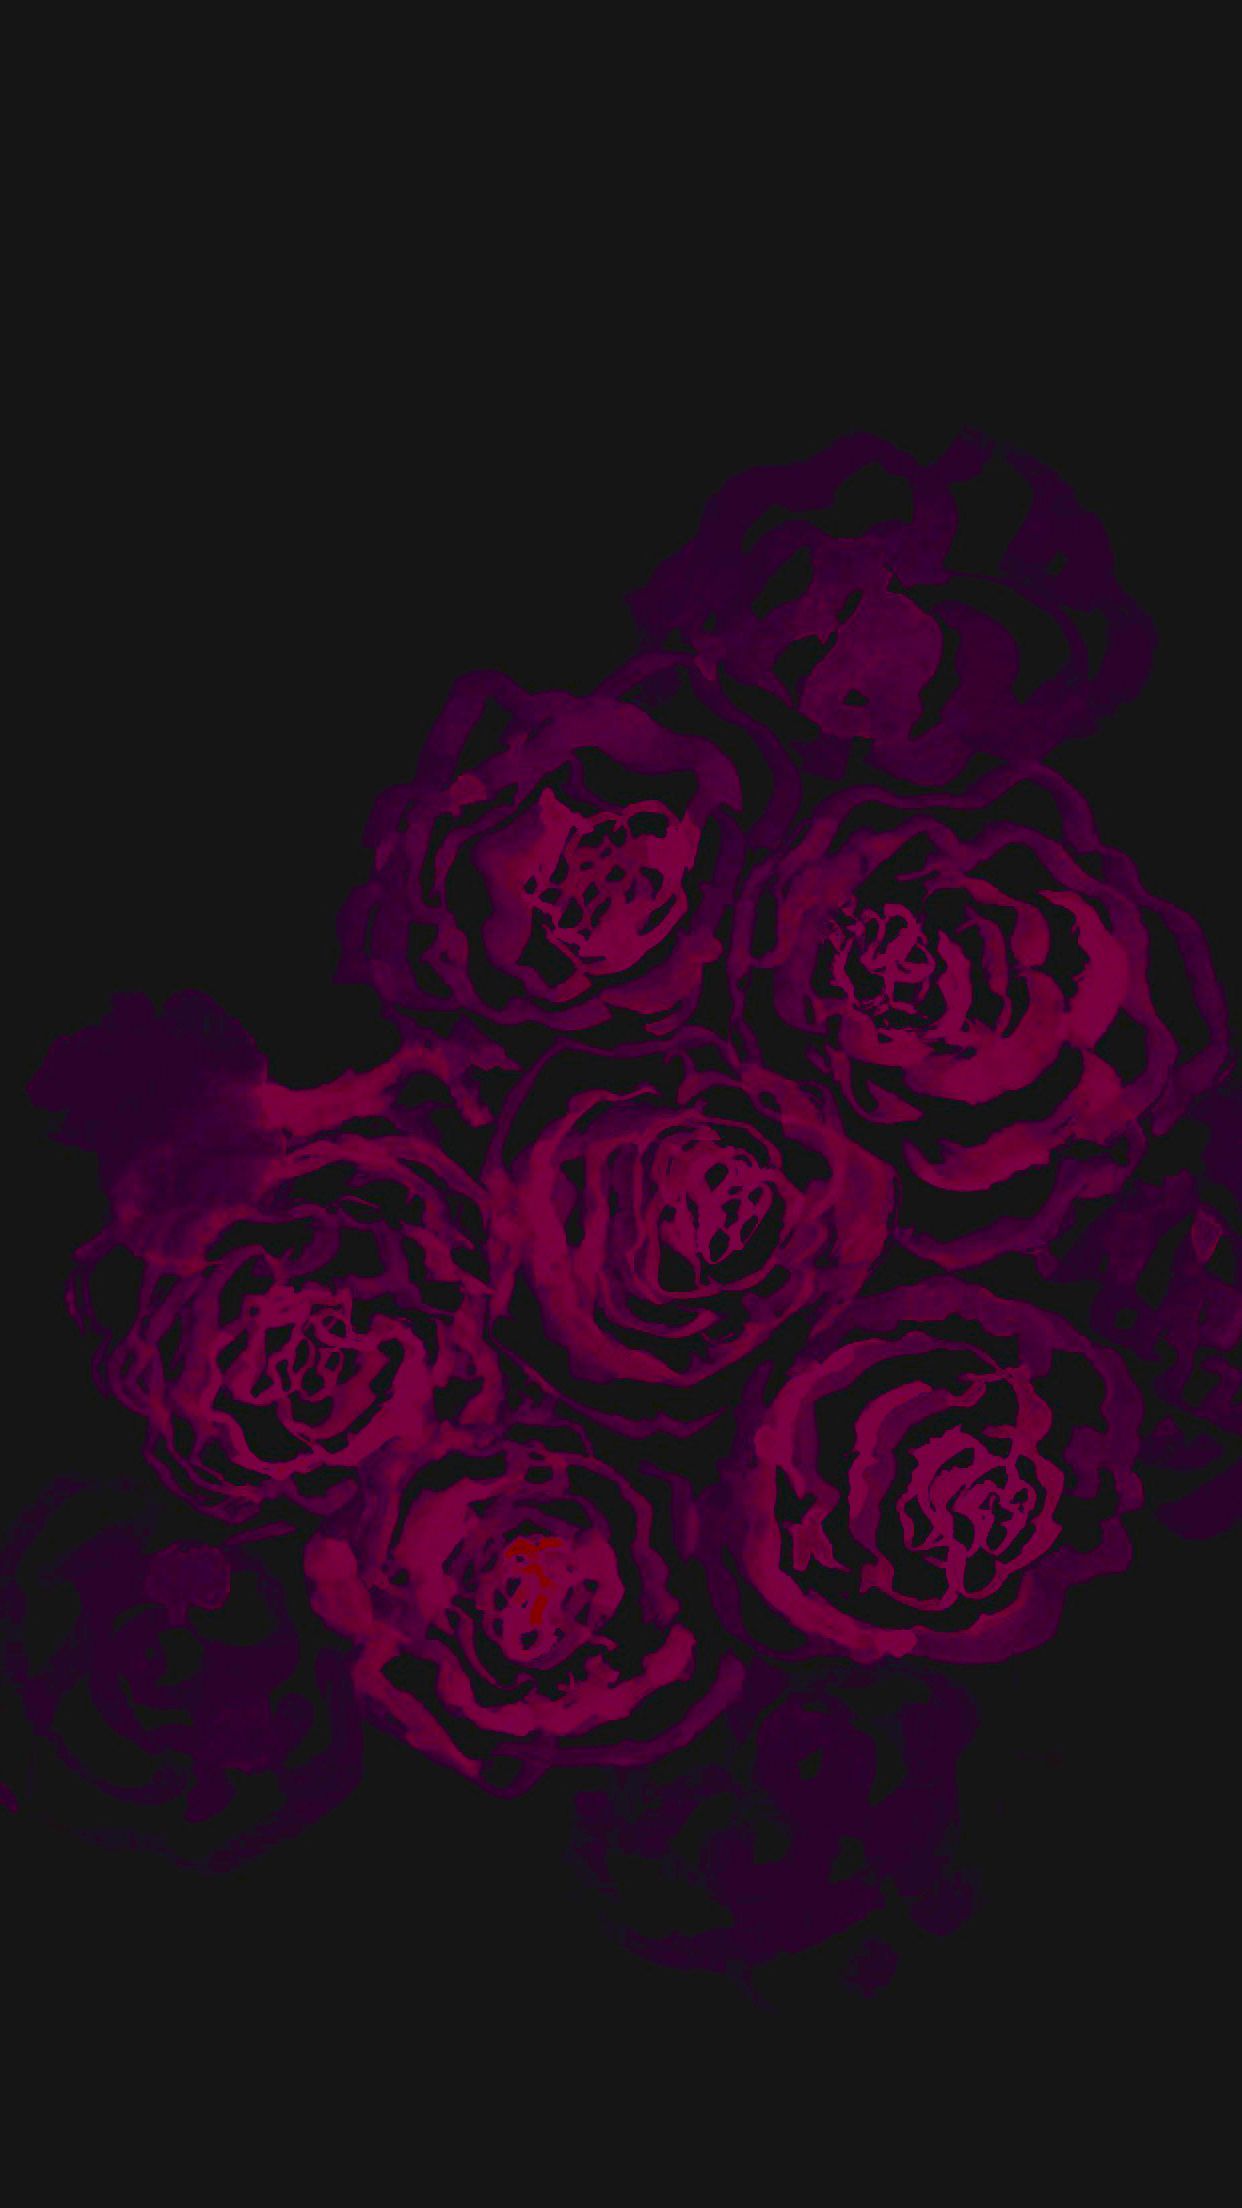 Black Rose Watercolor iPhone Wallpaper. Wallpaper iphone roses, iPhone wallpaper themes, Black wallpaper iphone